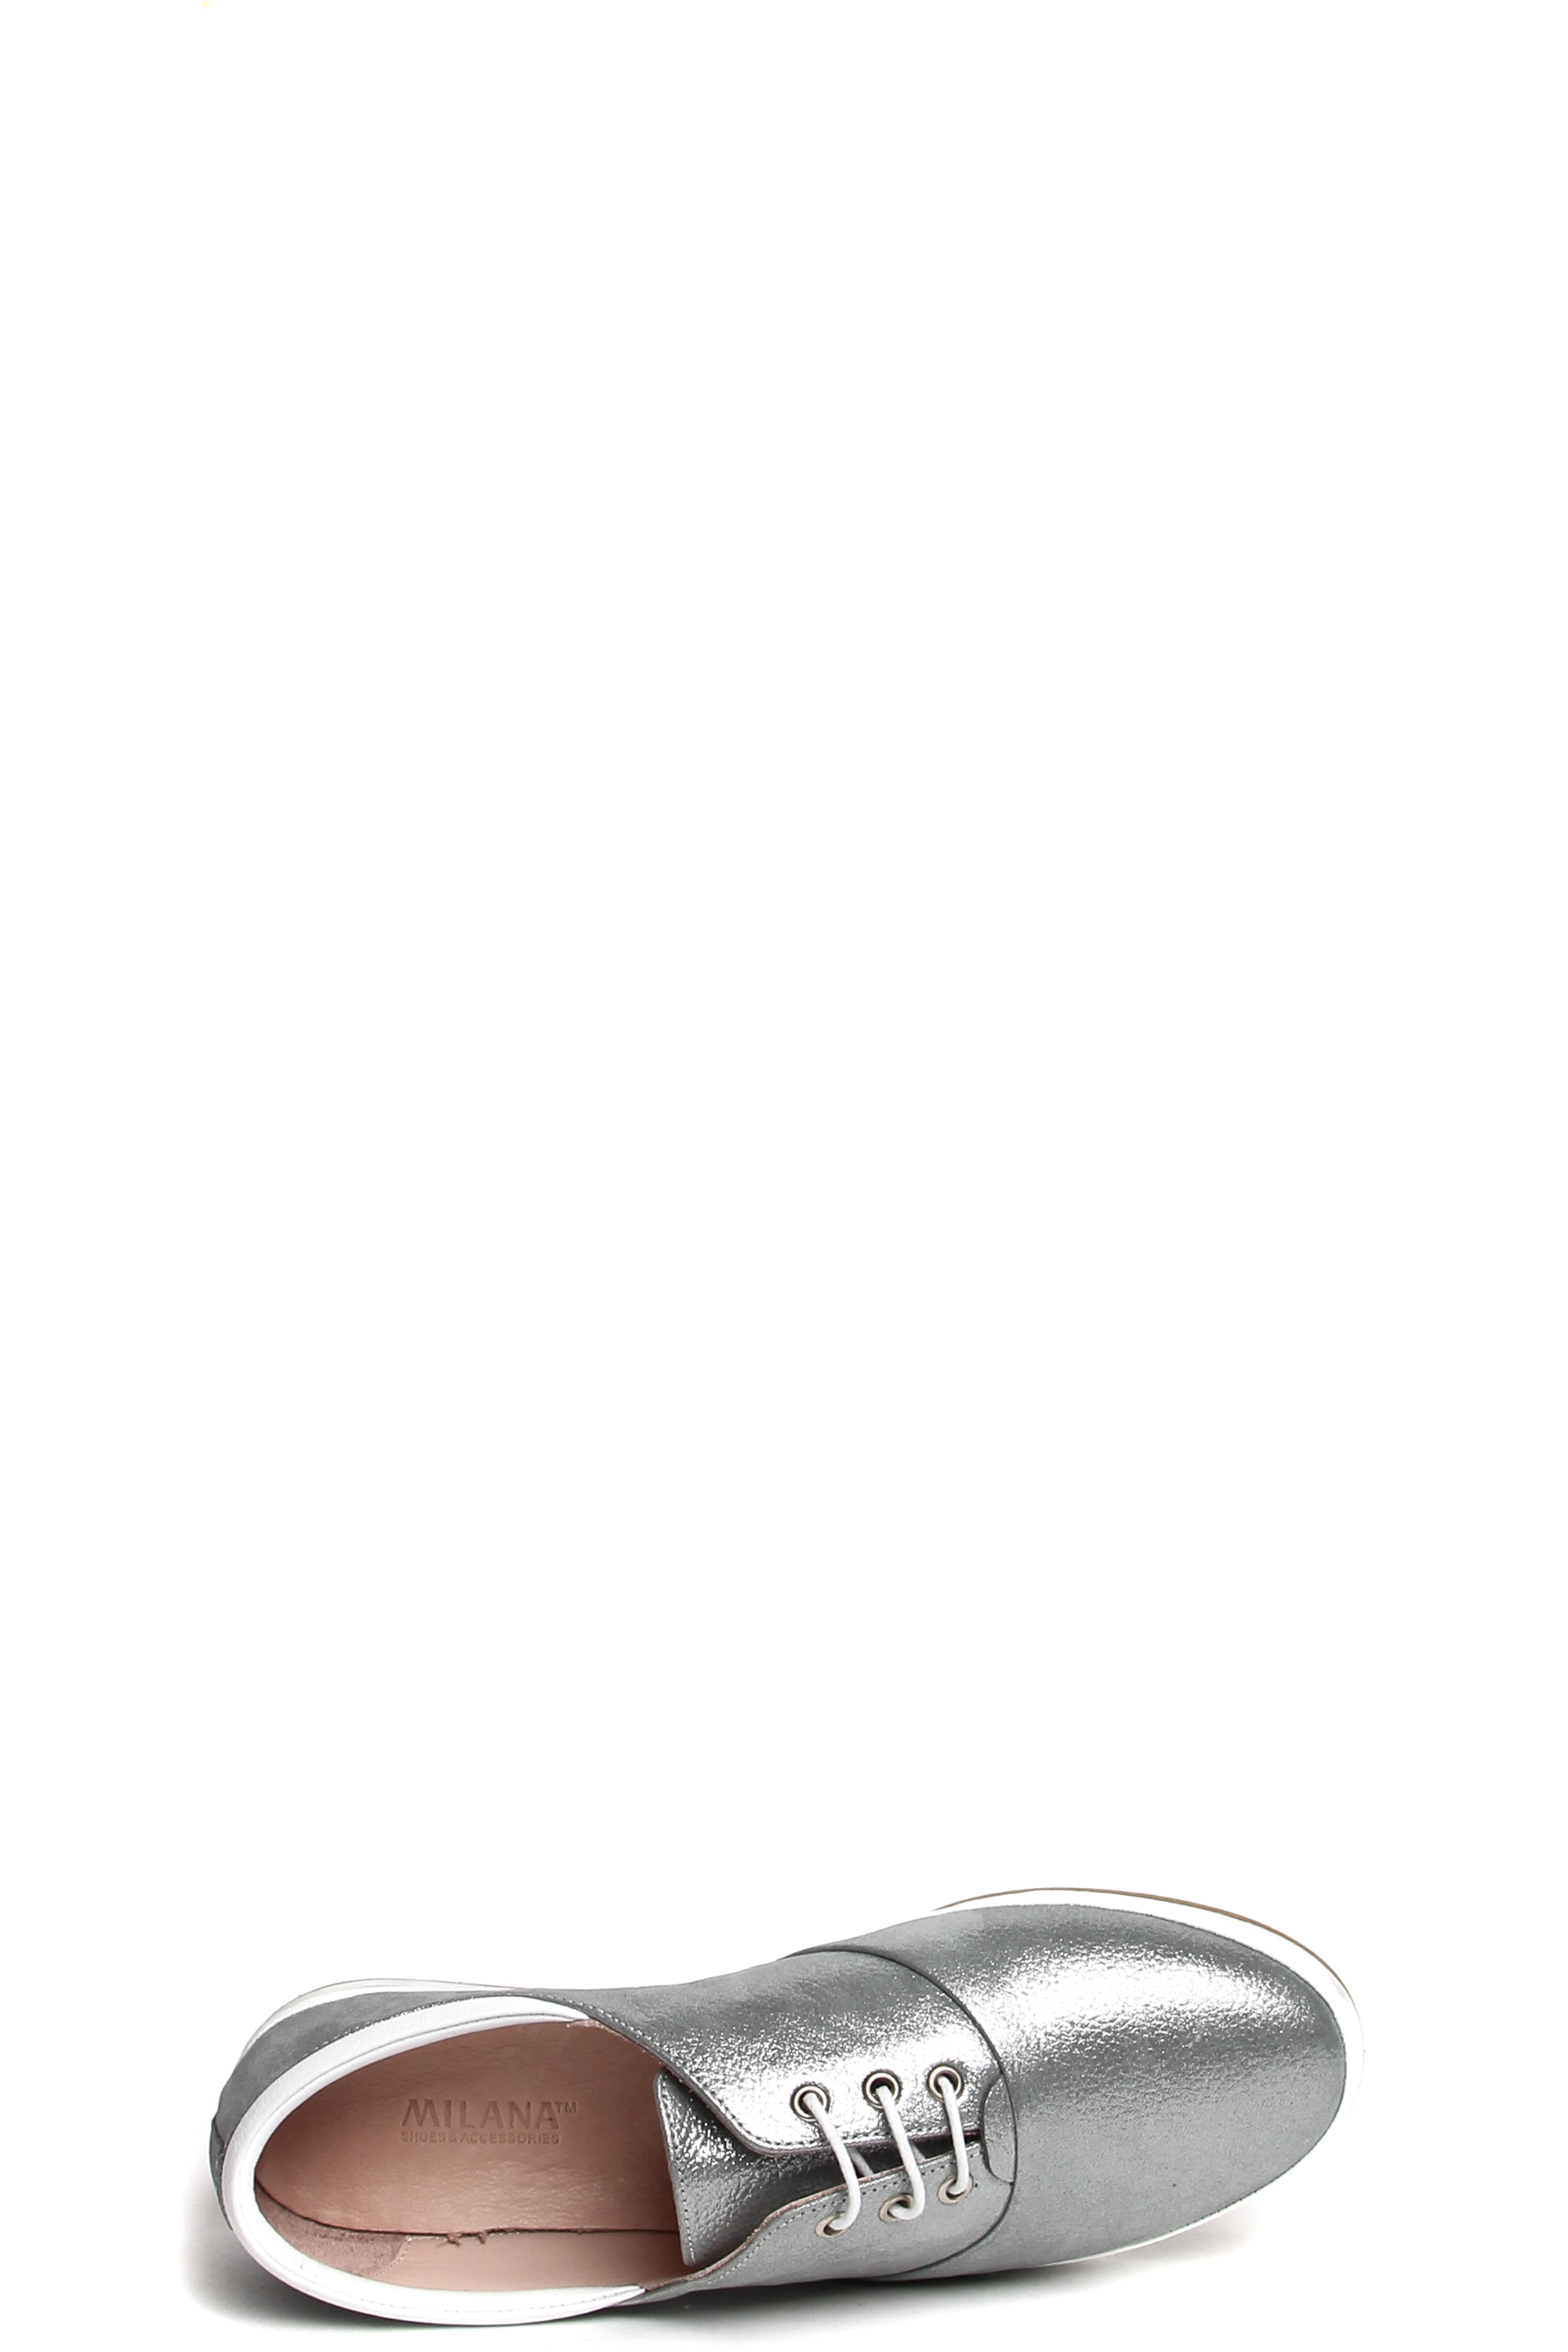 181462-1-2111 полуботинки  взрослый  жен. летн. натуральная кожа (сотен)/натуральная кожа/термоэластопласт серый Milana